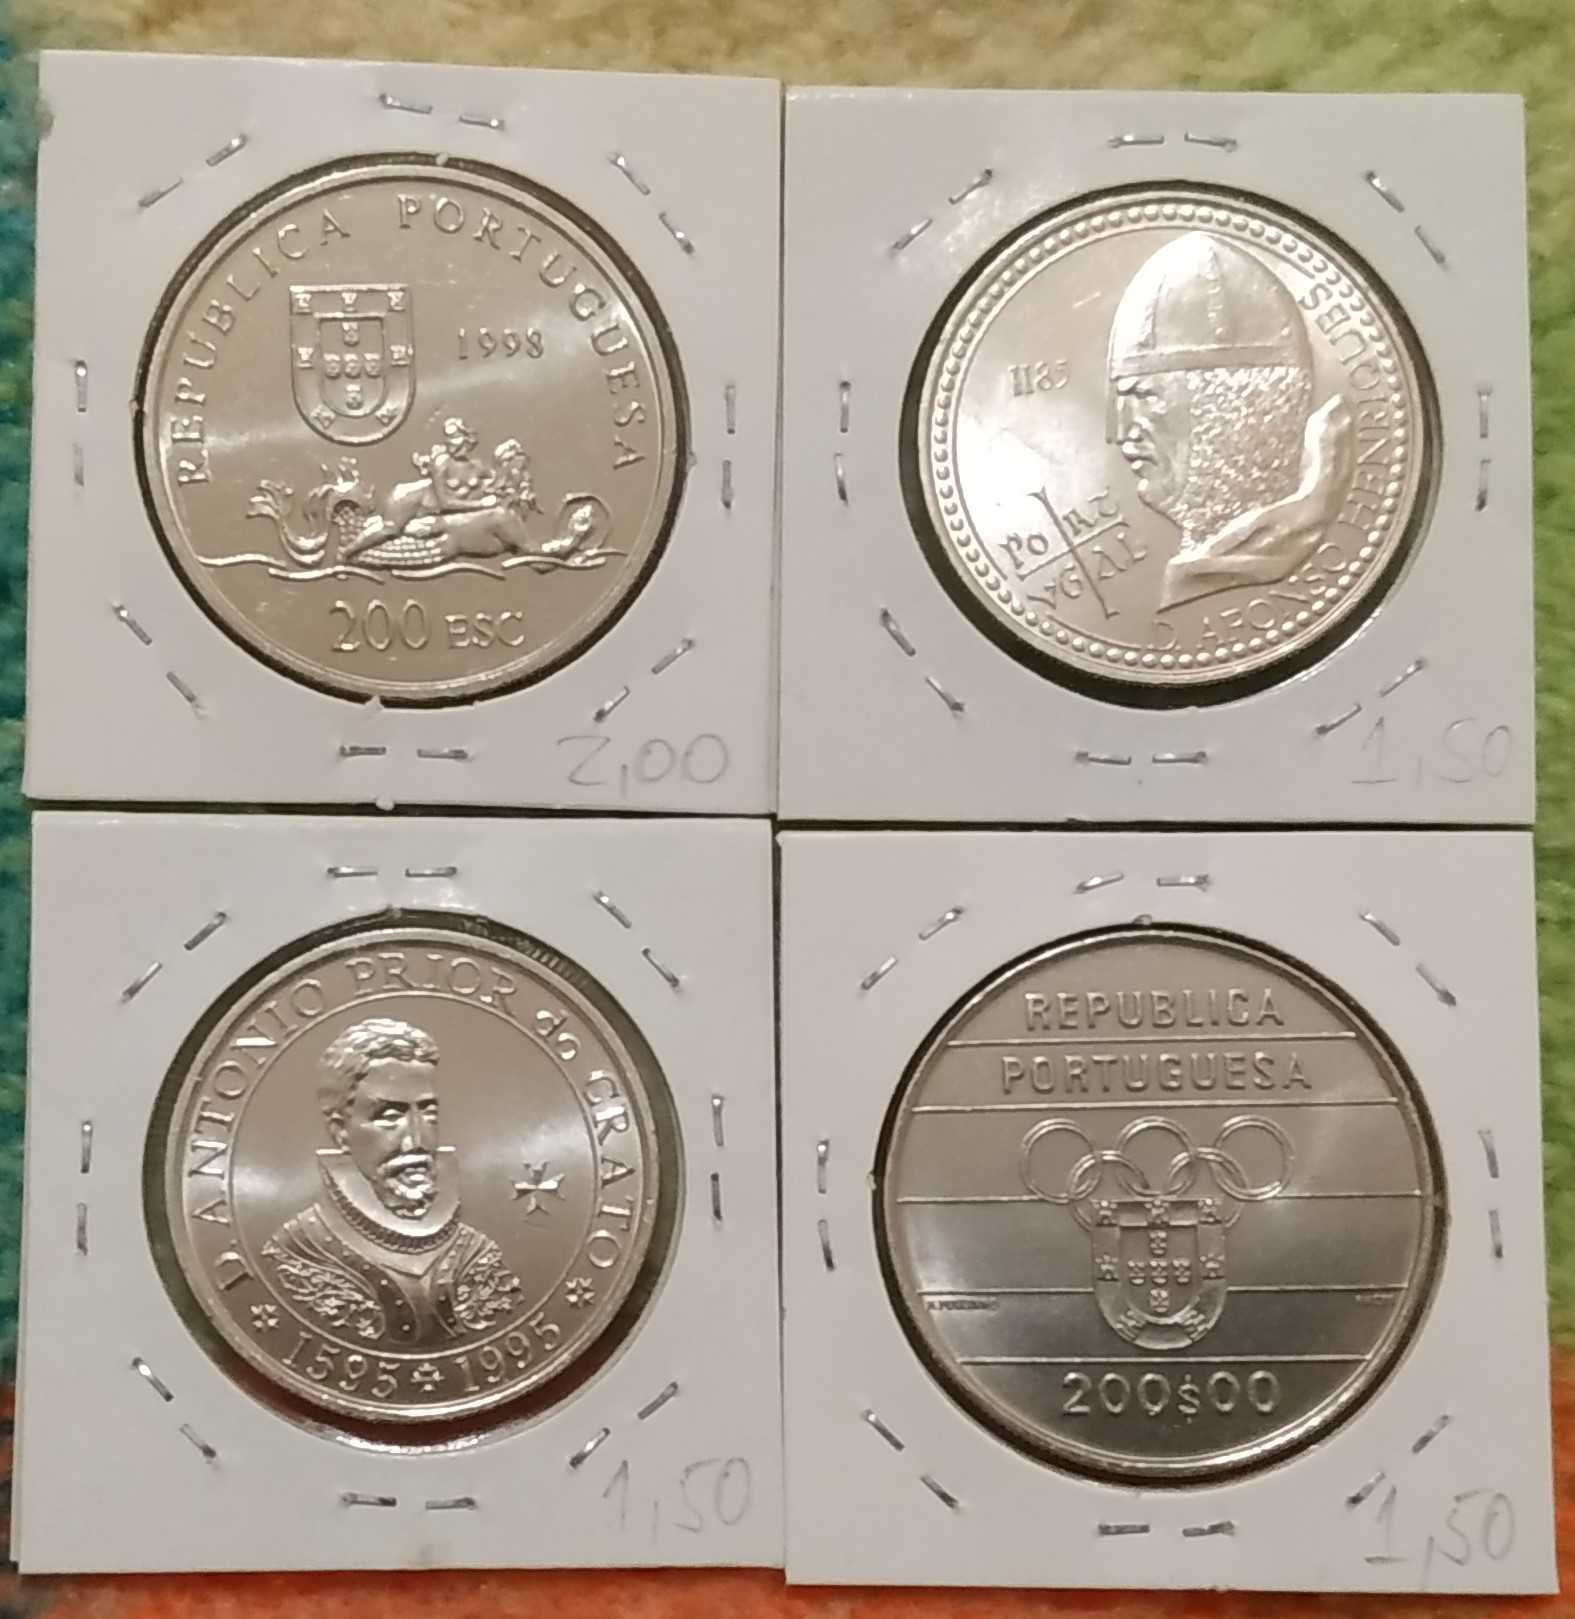 I - lote de 4 moedas